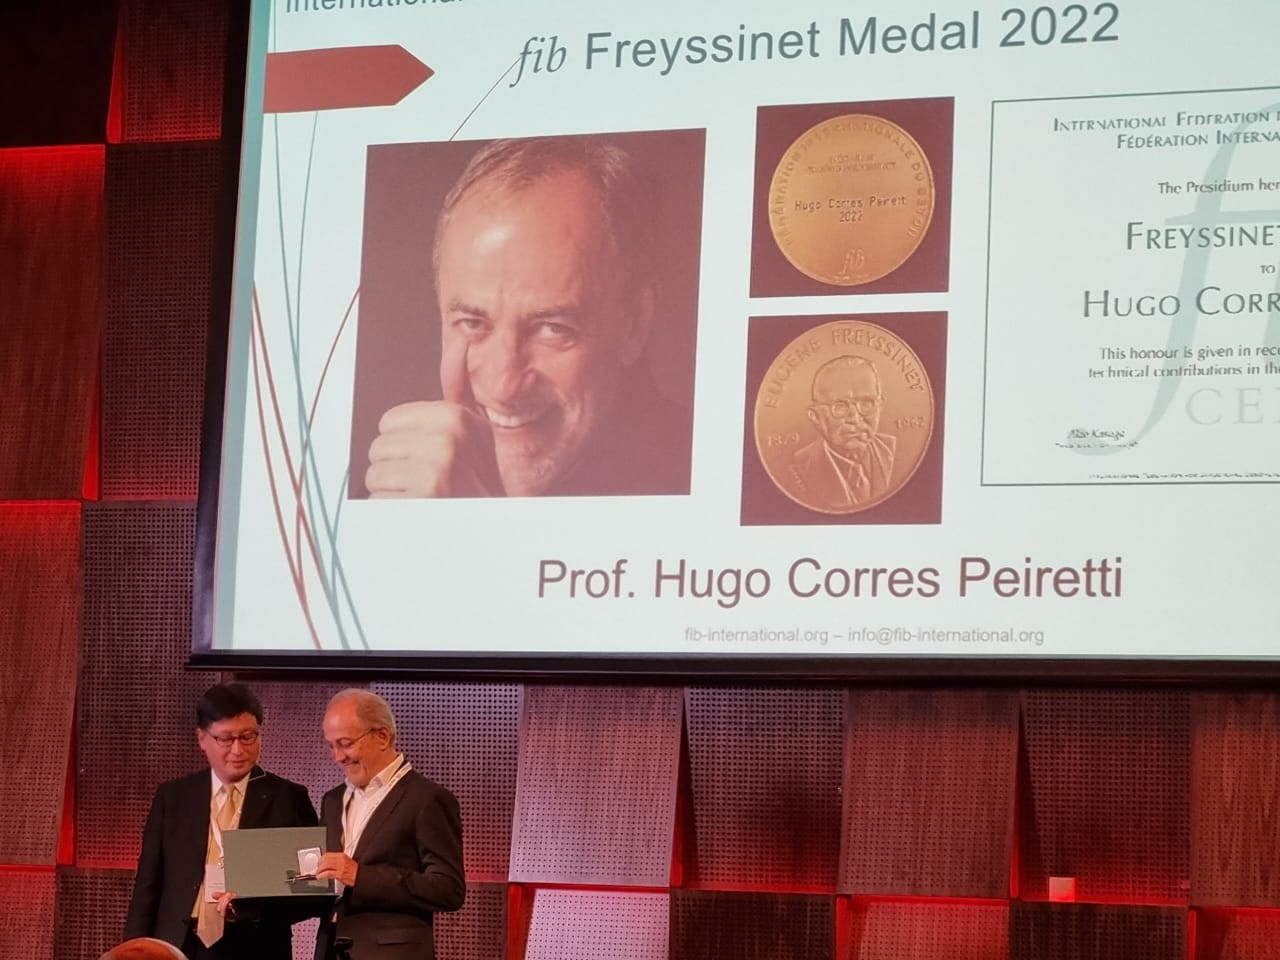 Hugo Corres recibe la Medalla Freyssinet que otorga la fib